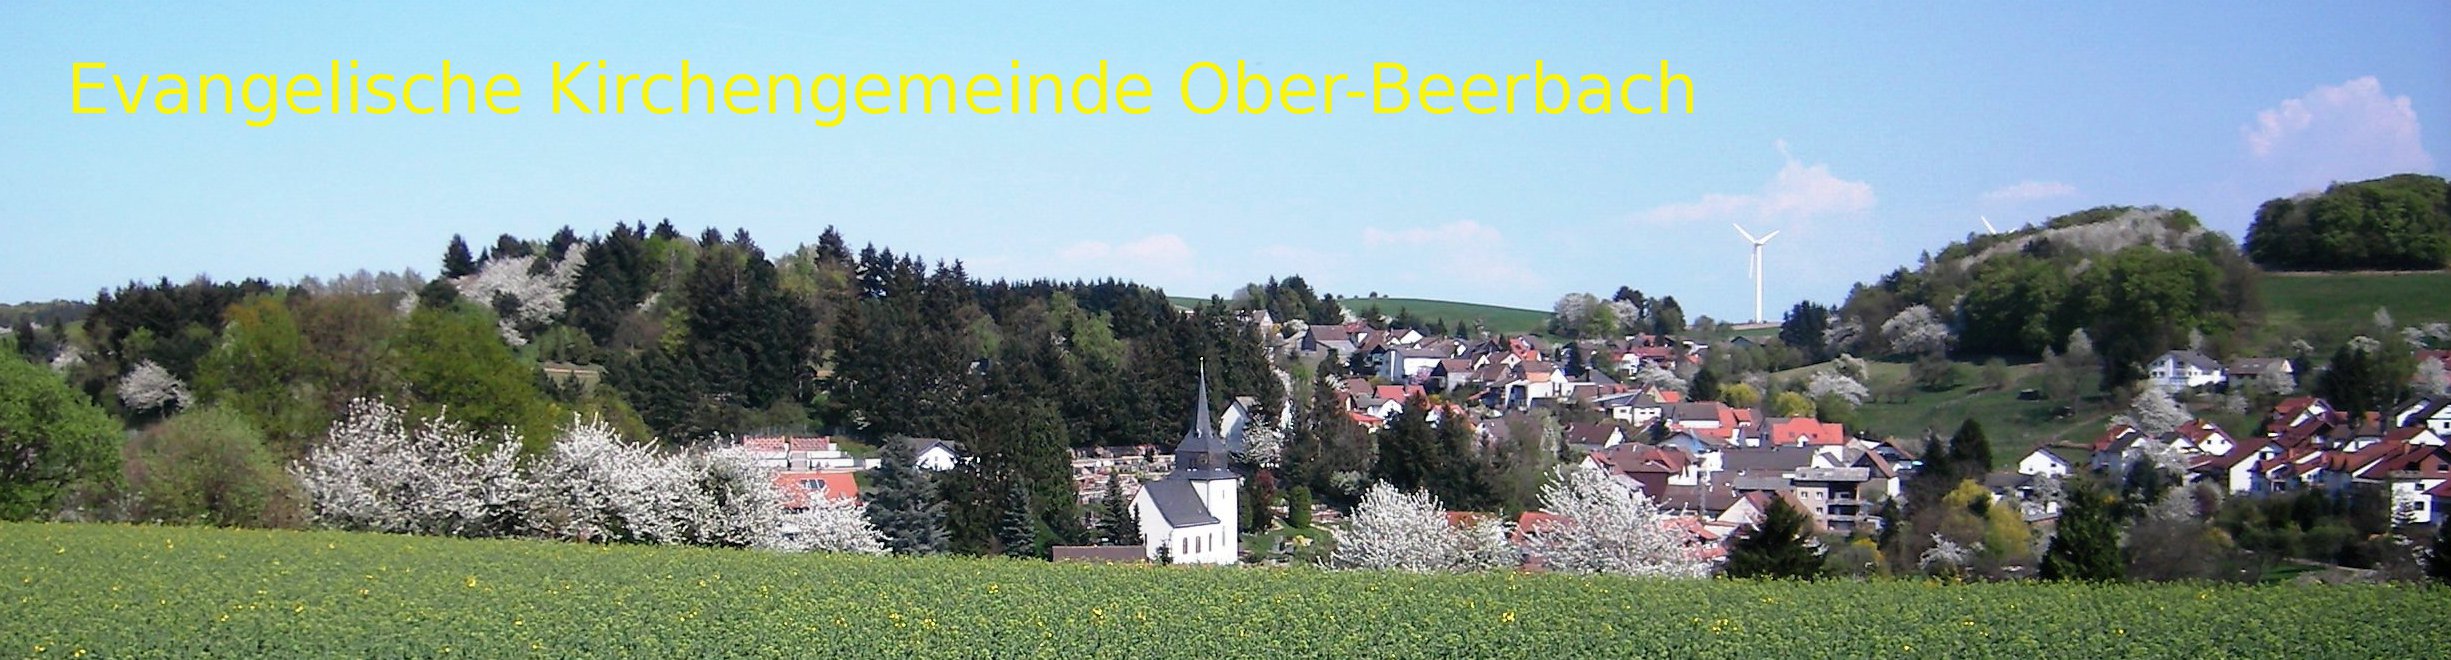 Ober-Beerbach